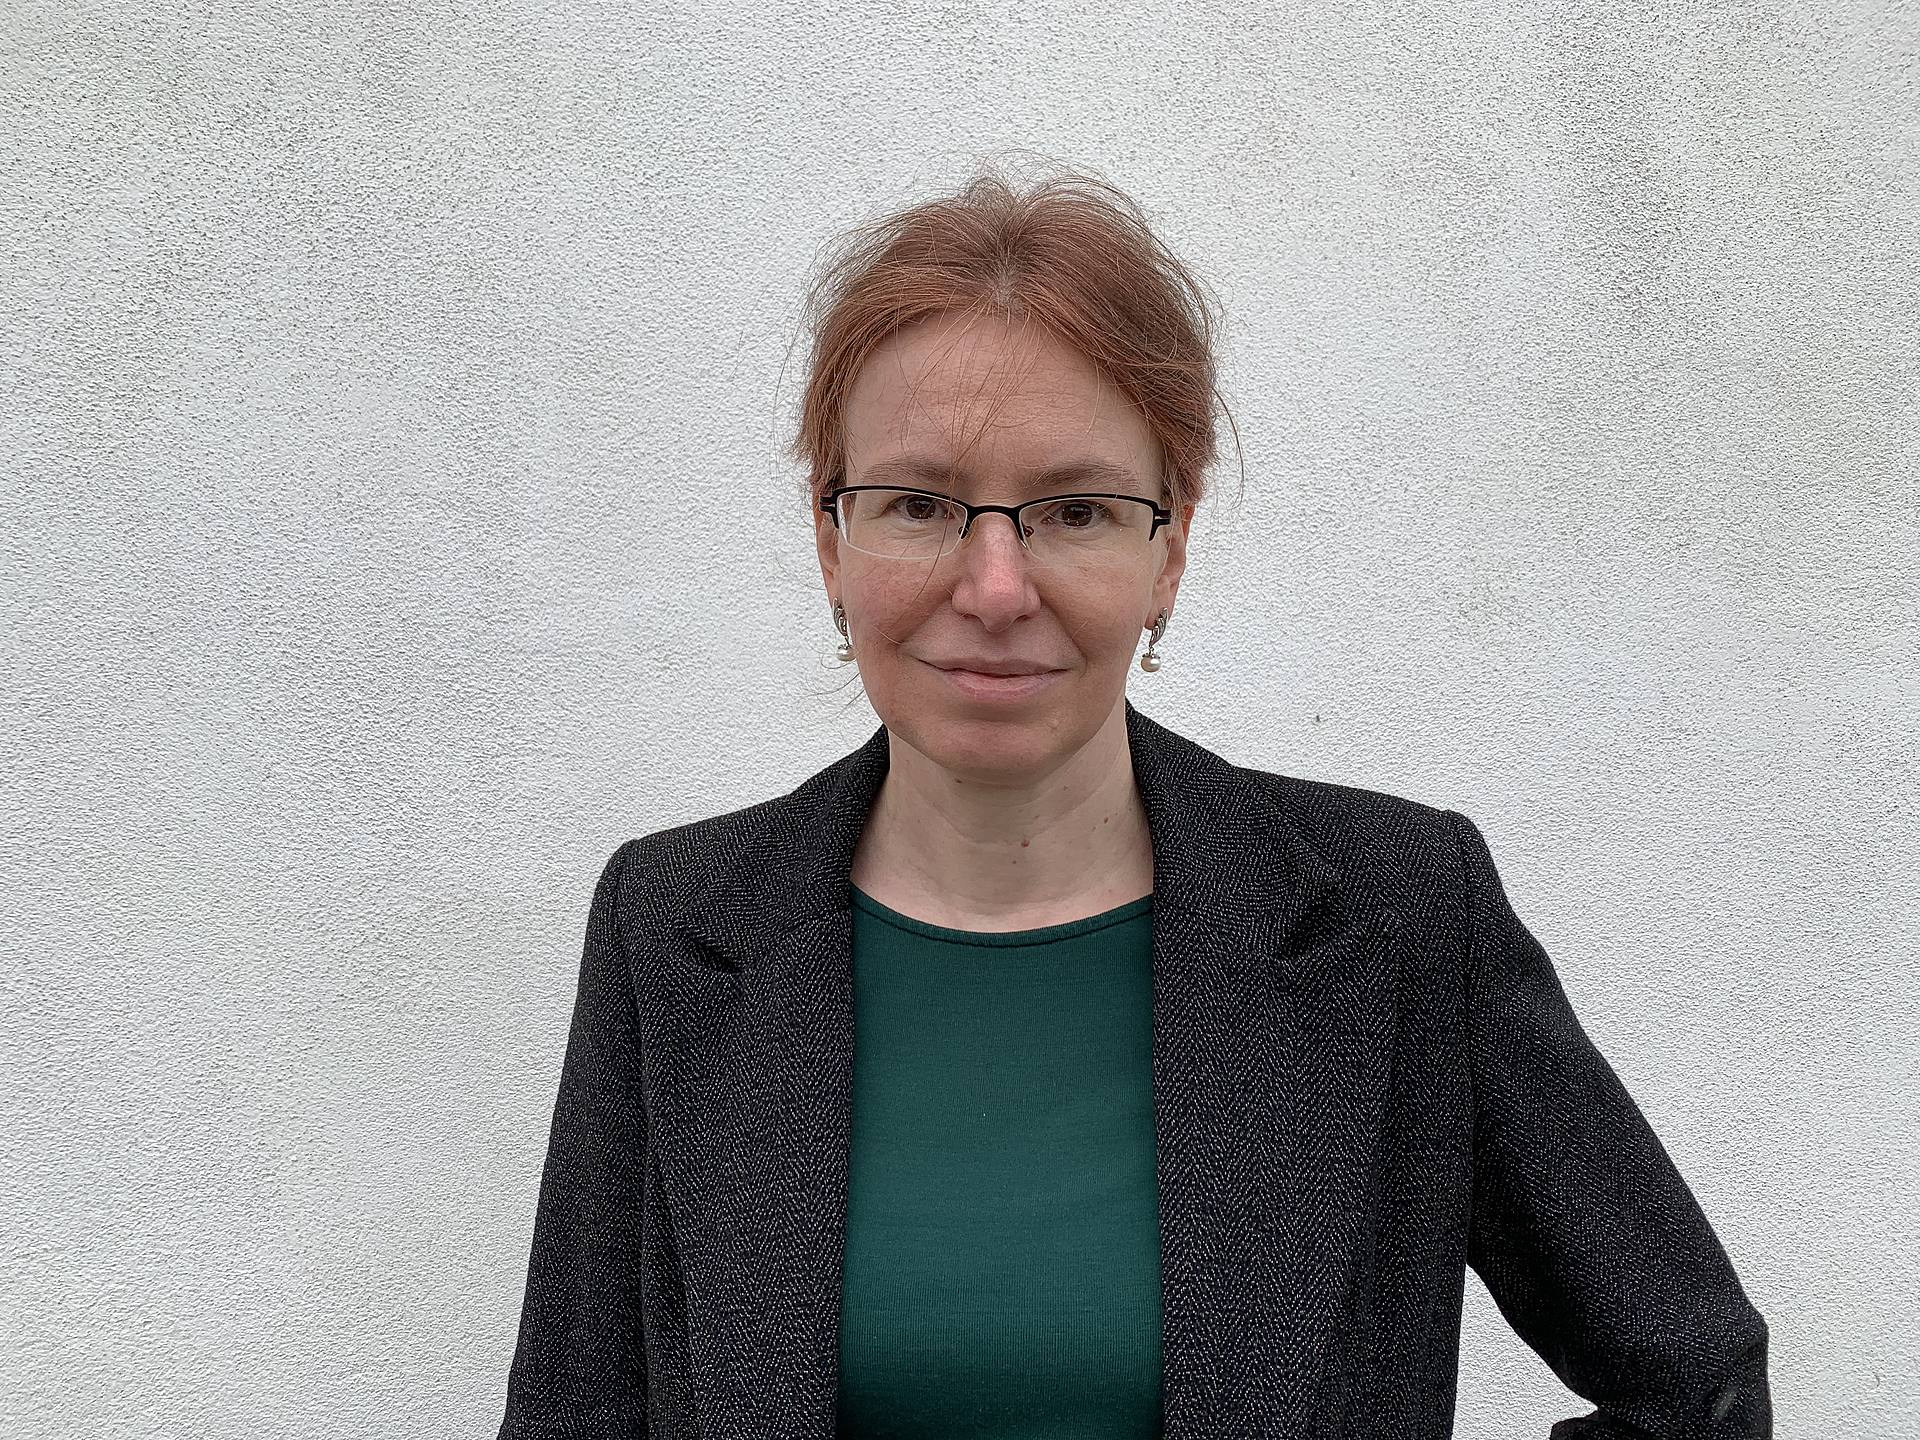 Porträtfoto von Romana Weiershausen, Professorin für Frankophone Germanisitik an der Universität des Saarlandes